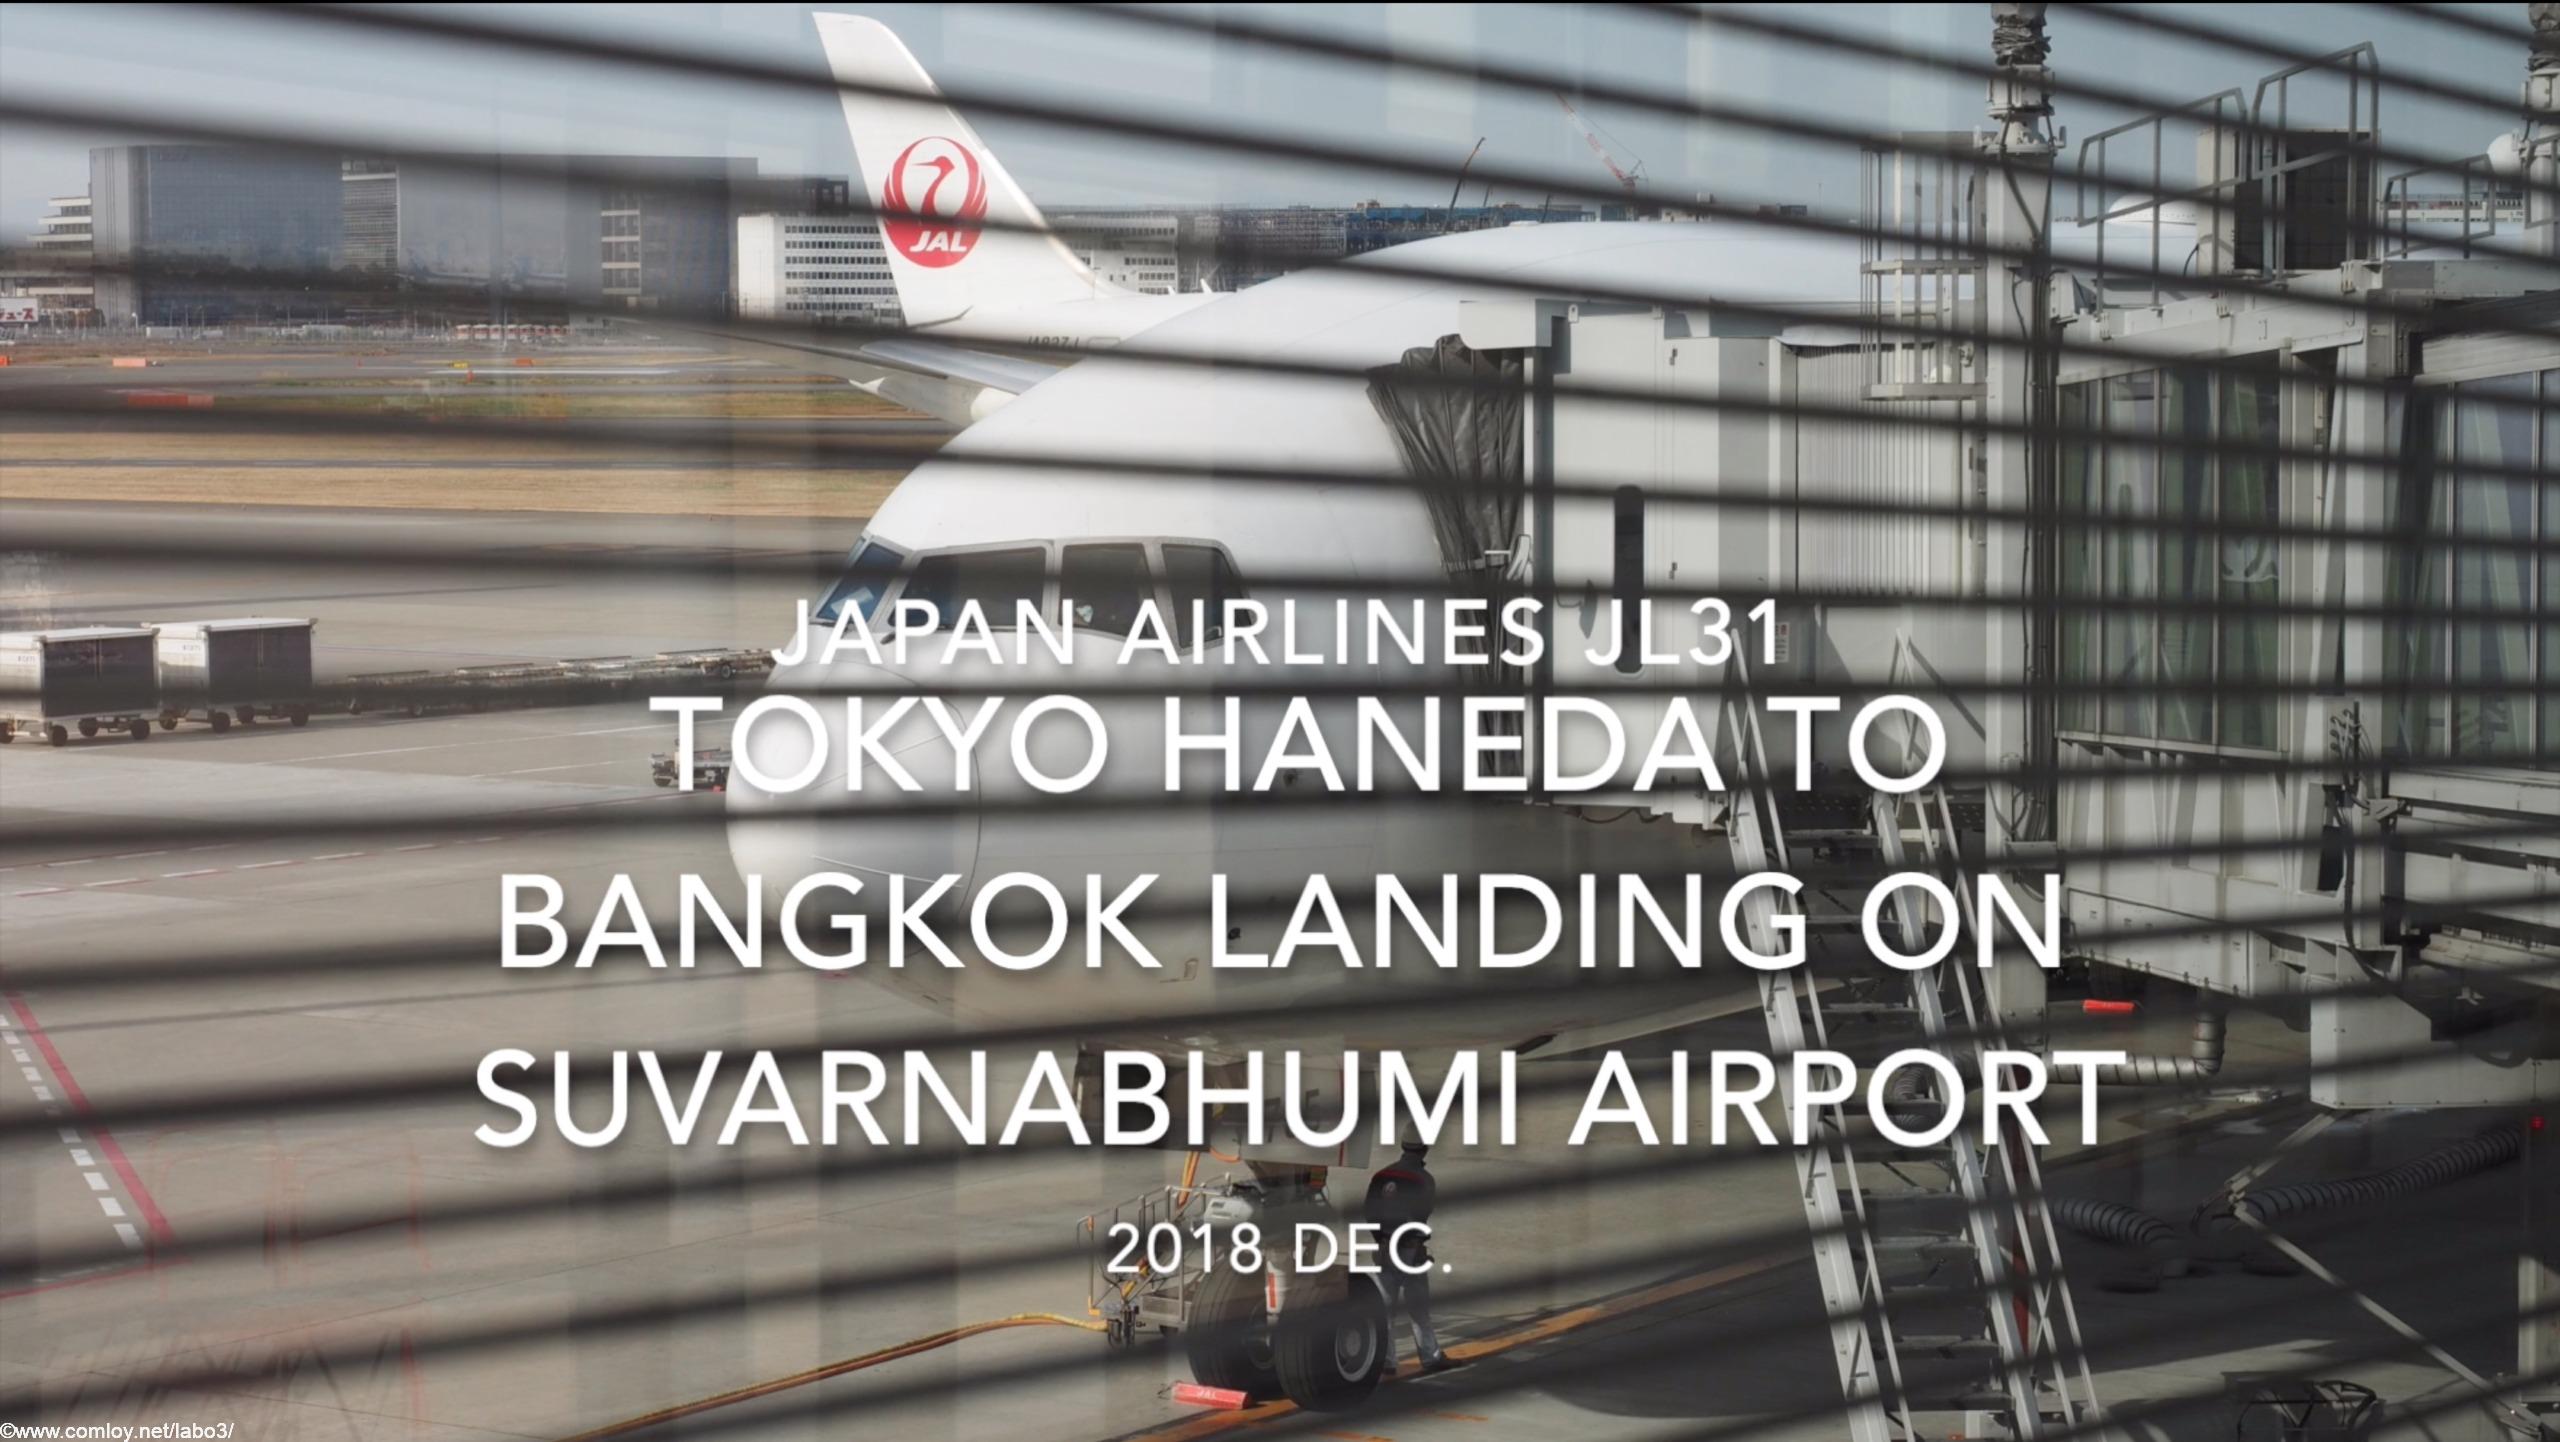 【機内から離着陸映像】2018 Dec. JAPAN Airlines JL31 TOKYO HANEDA to Bangkok Landing Suvarnabhumi Airport 日本航空 羽田 - バンコク スワンナプーム空港着陸